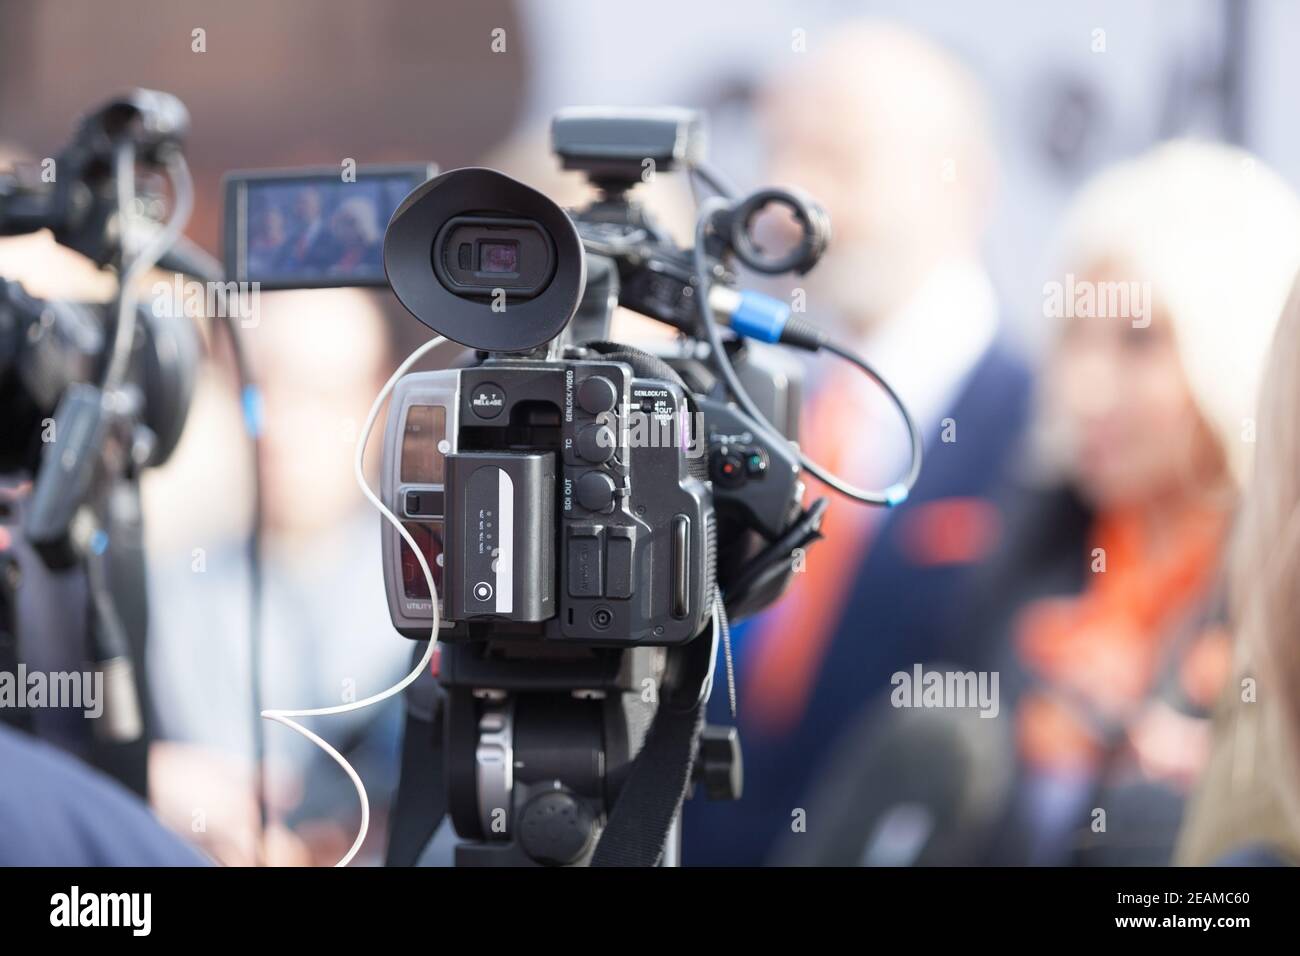 Filmer un événement multimédia avec une caméra vidéo. Conférence de presse. Banque D'Images